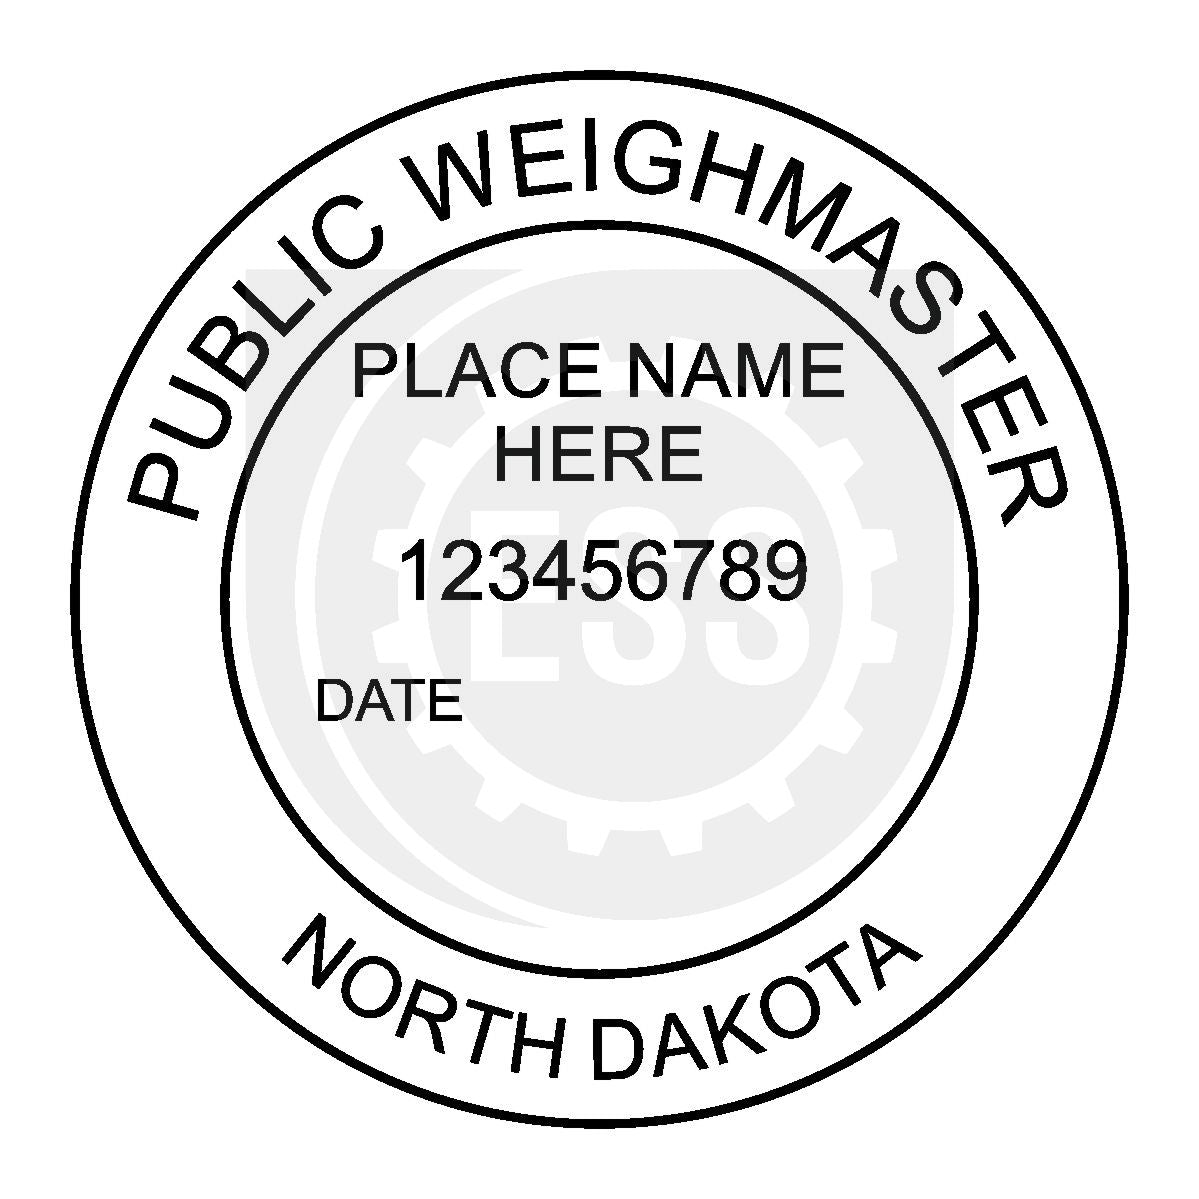 North Dakota Public Weighmaster Seal Setup